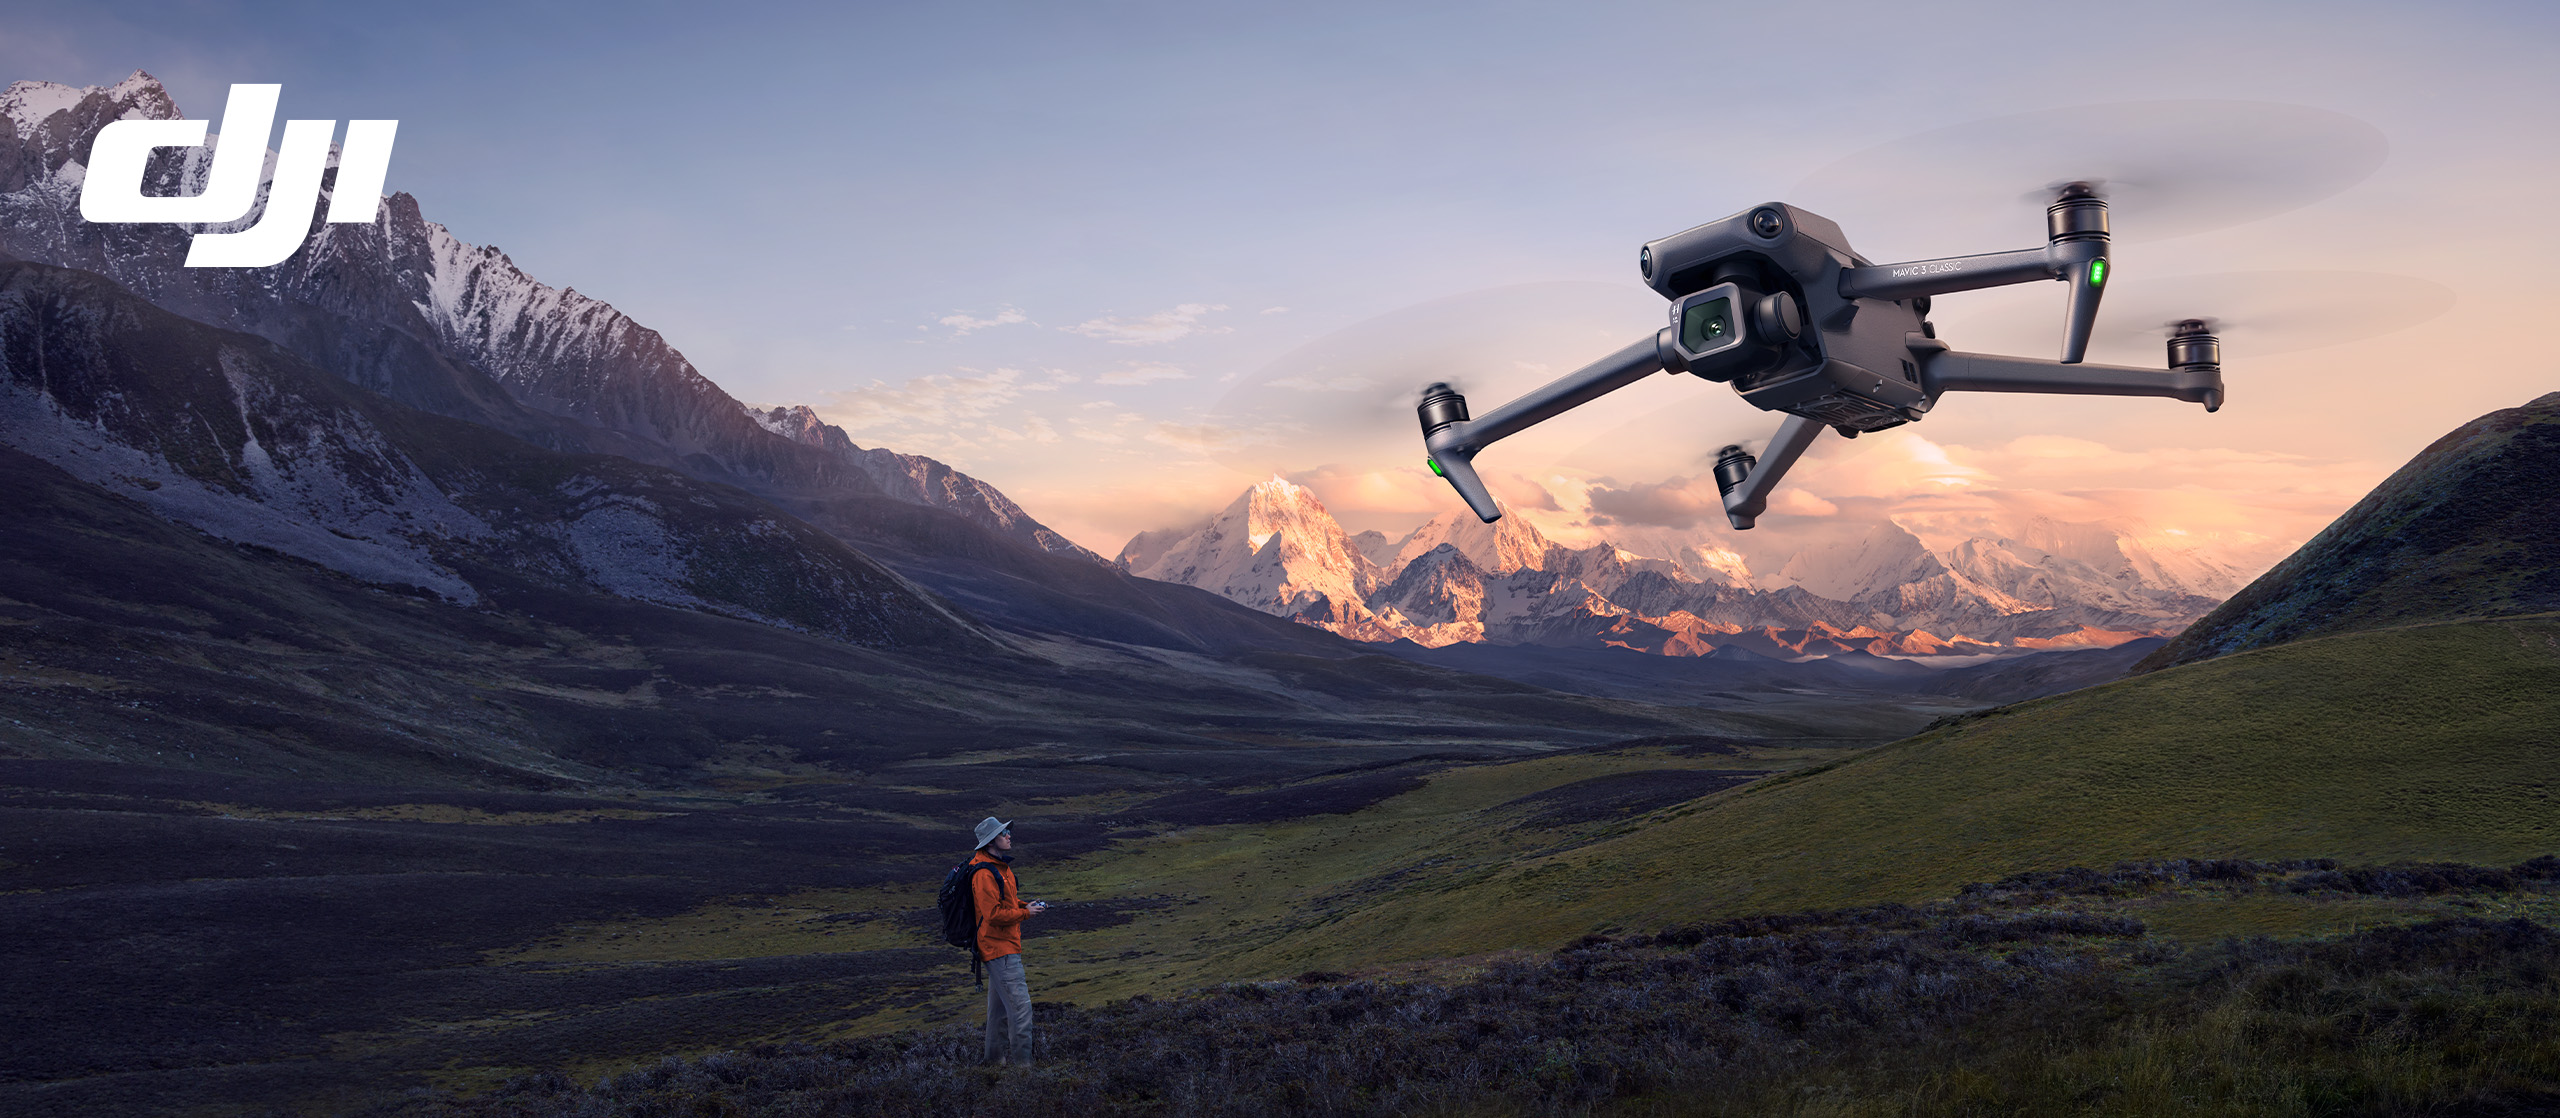 DJI Drohne fliegt bei Sonnenuntergang in der Nähe eines Waldes